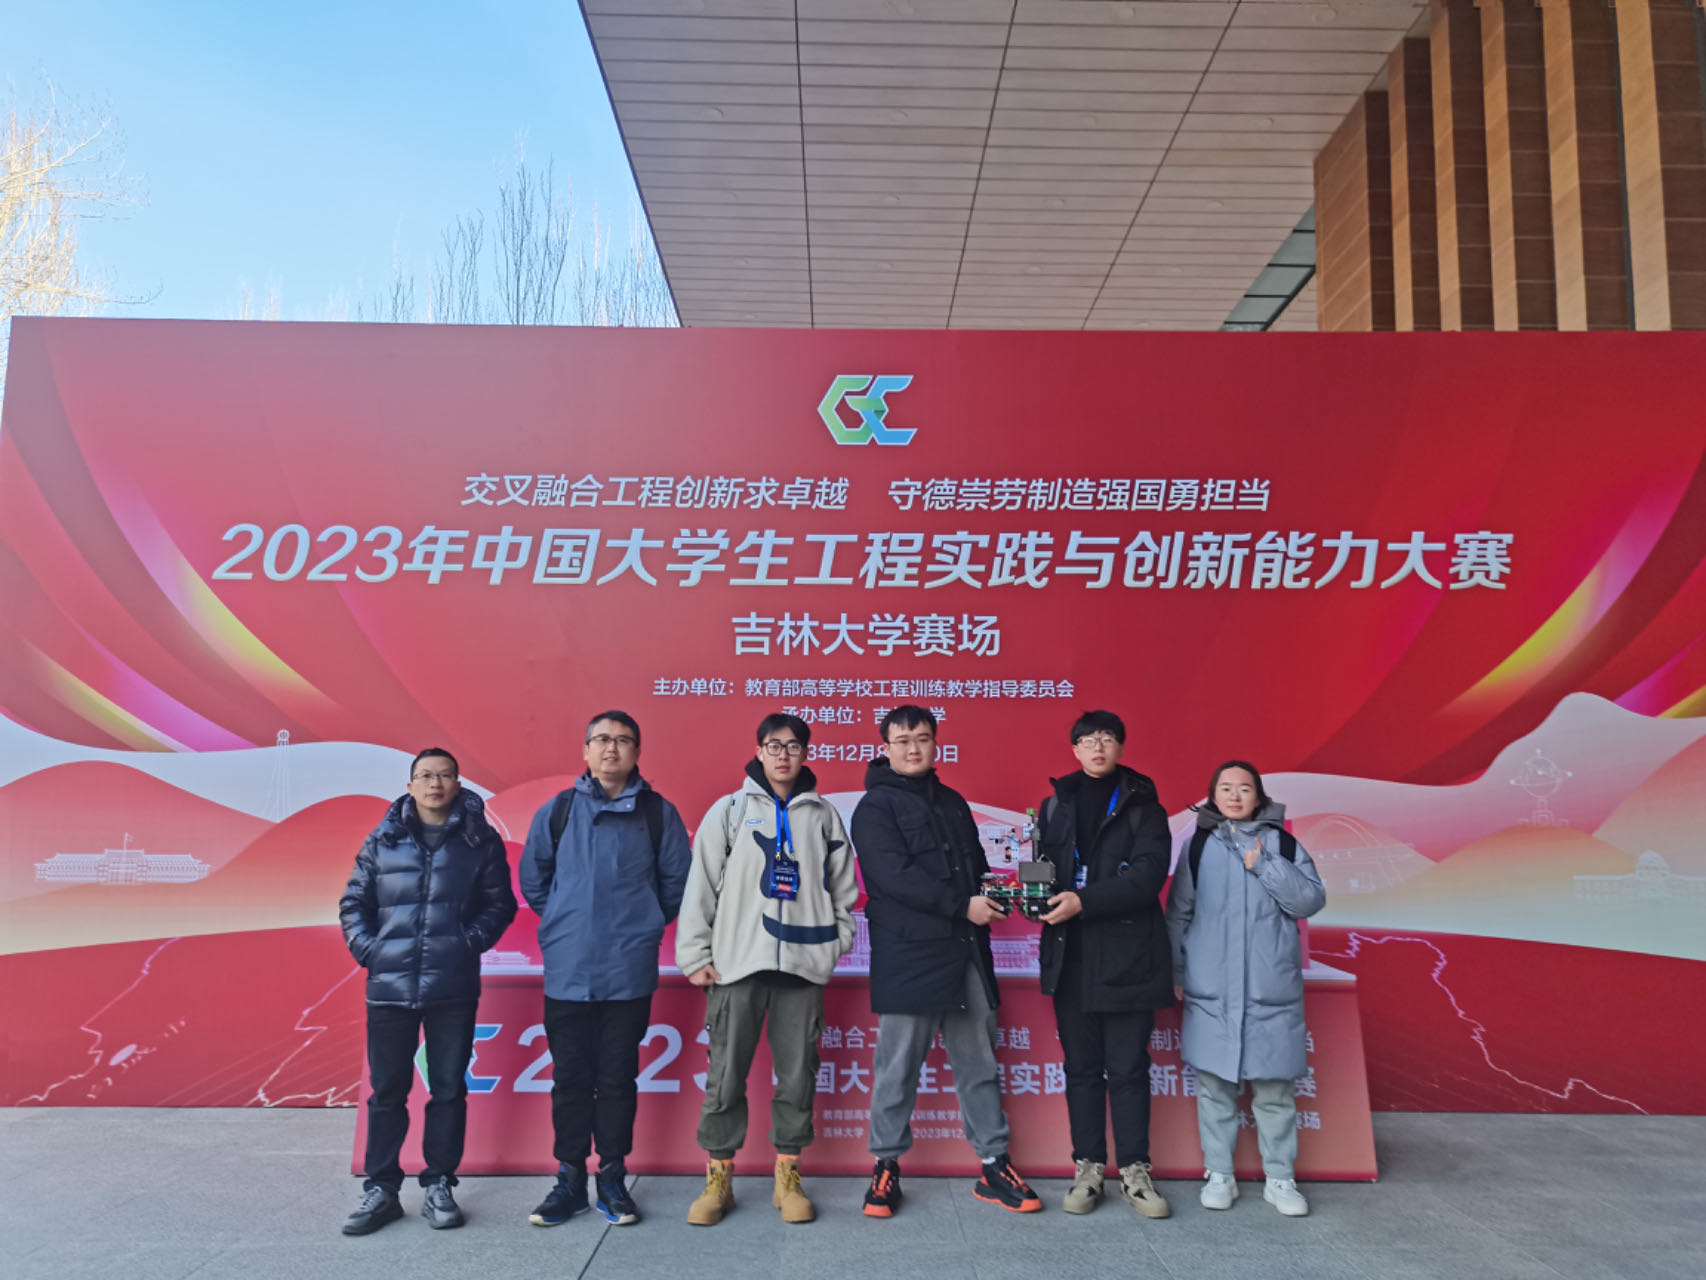 【喜报】我院学子获2023年中国大学生工程实践与创新能力大赛金奖